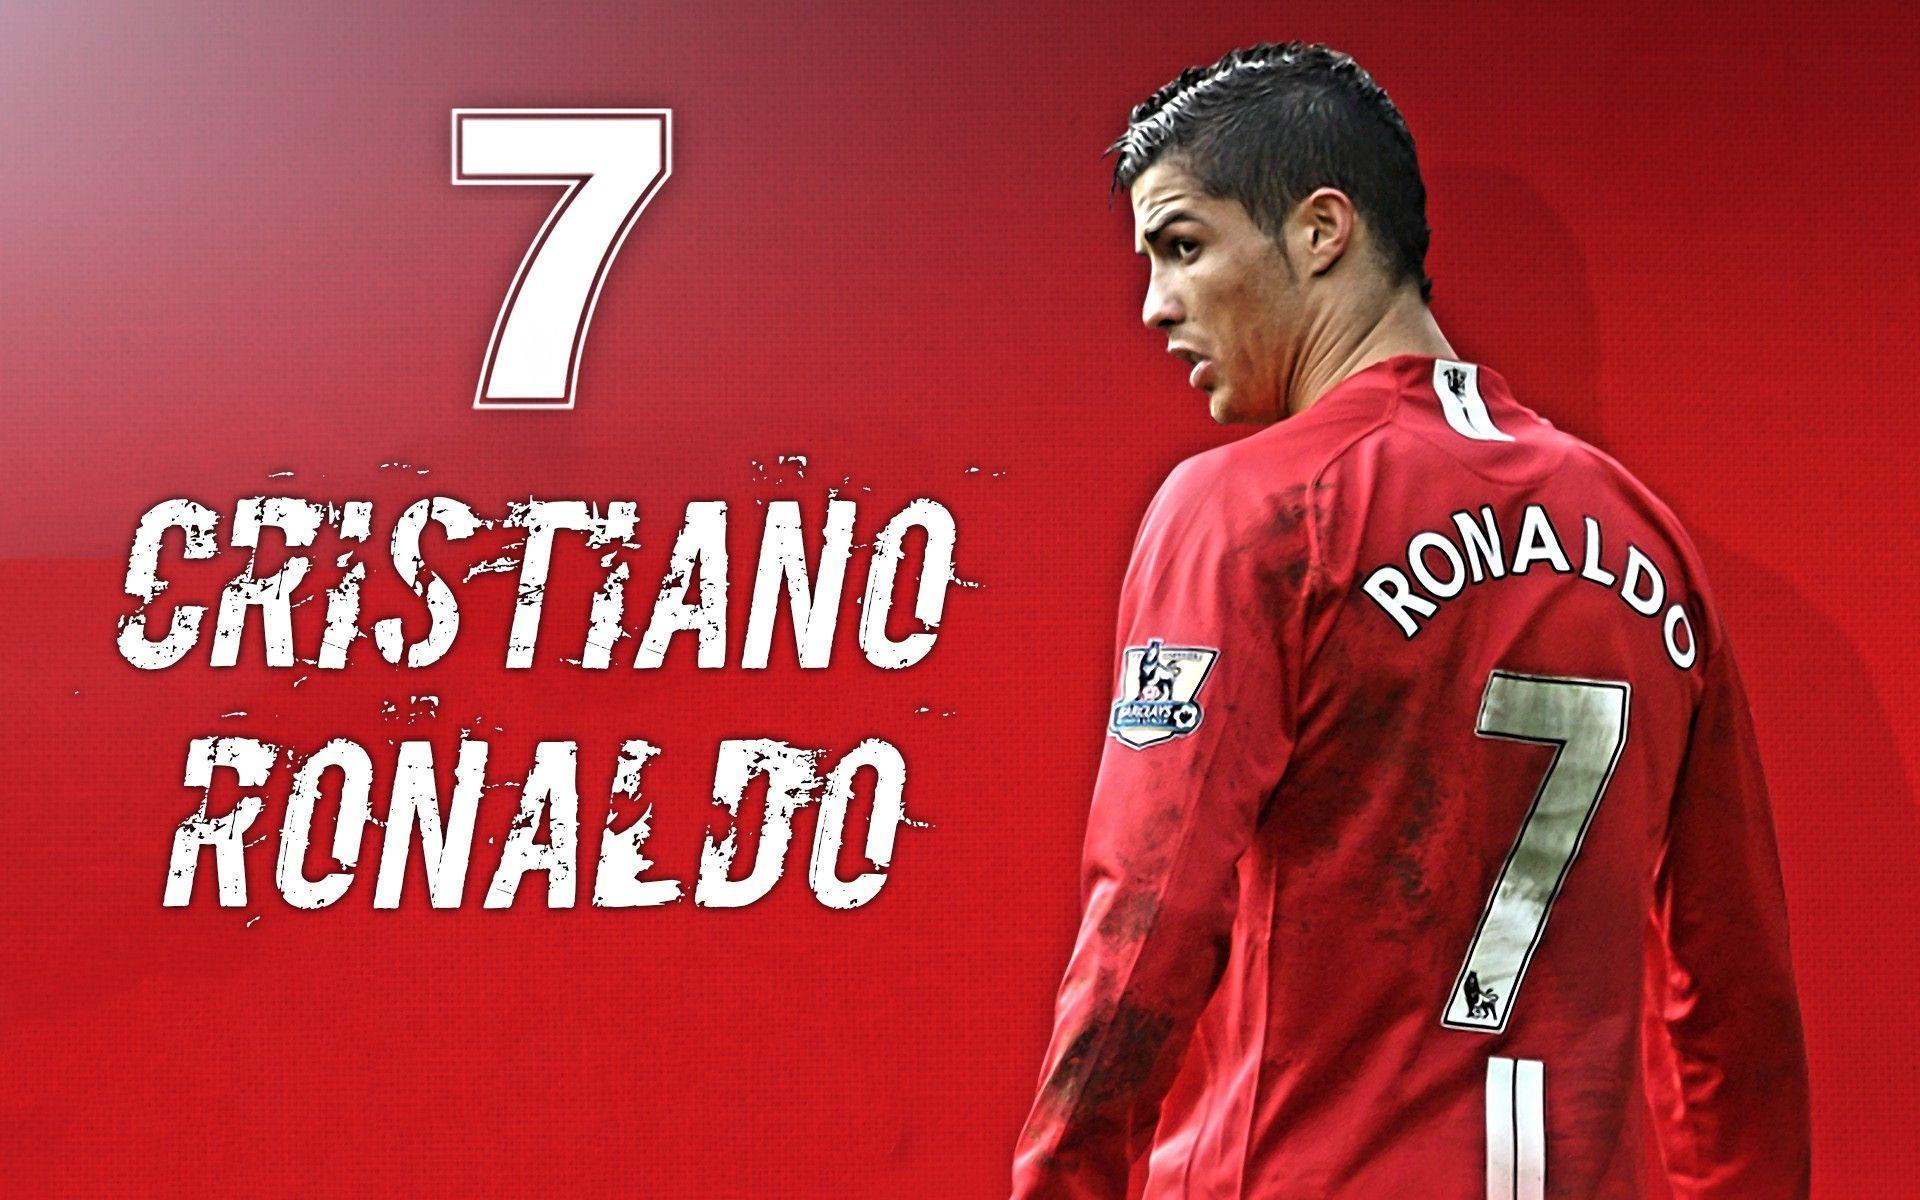 Cristiano Ronaldo Manchester United Wallpapers - Top Free Cristiano ...